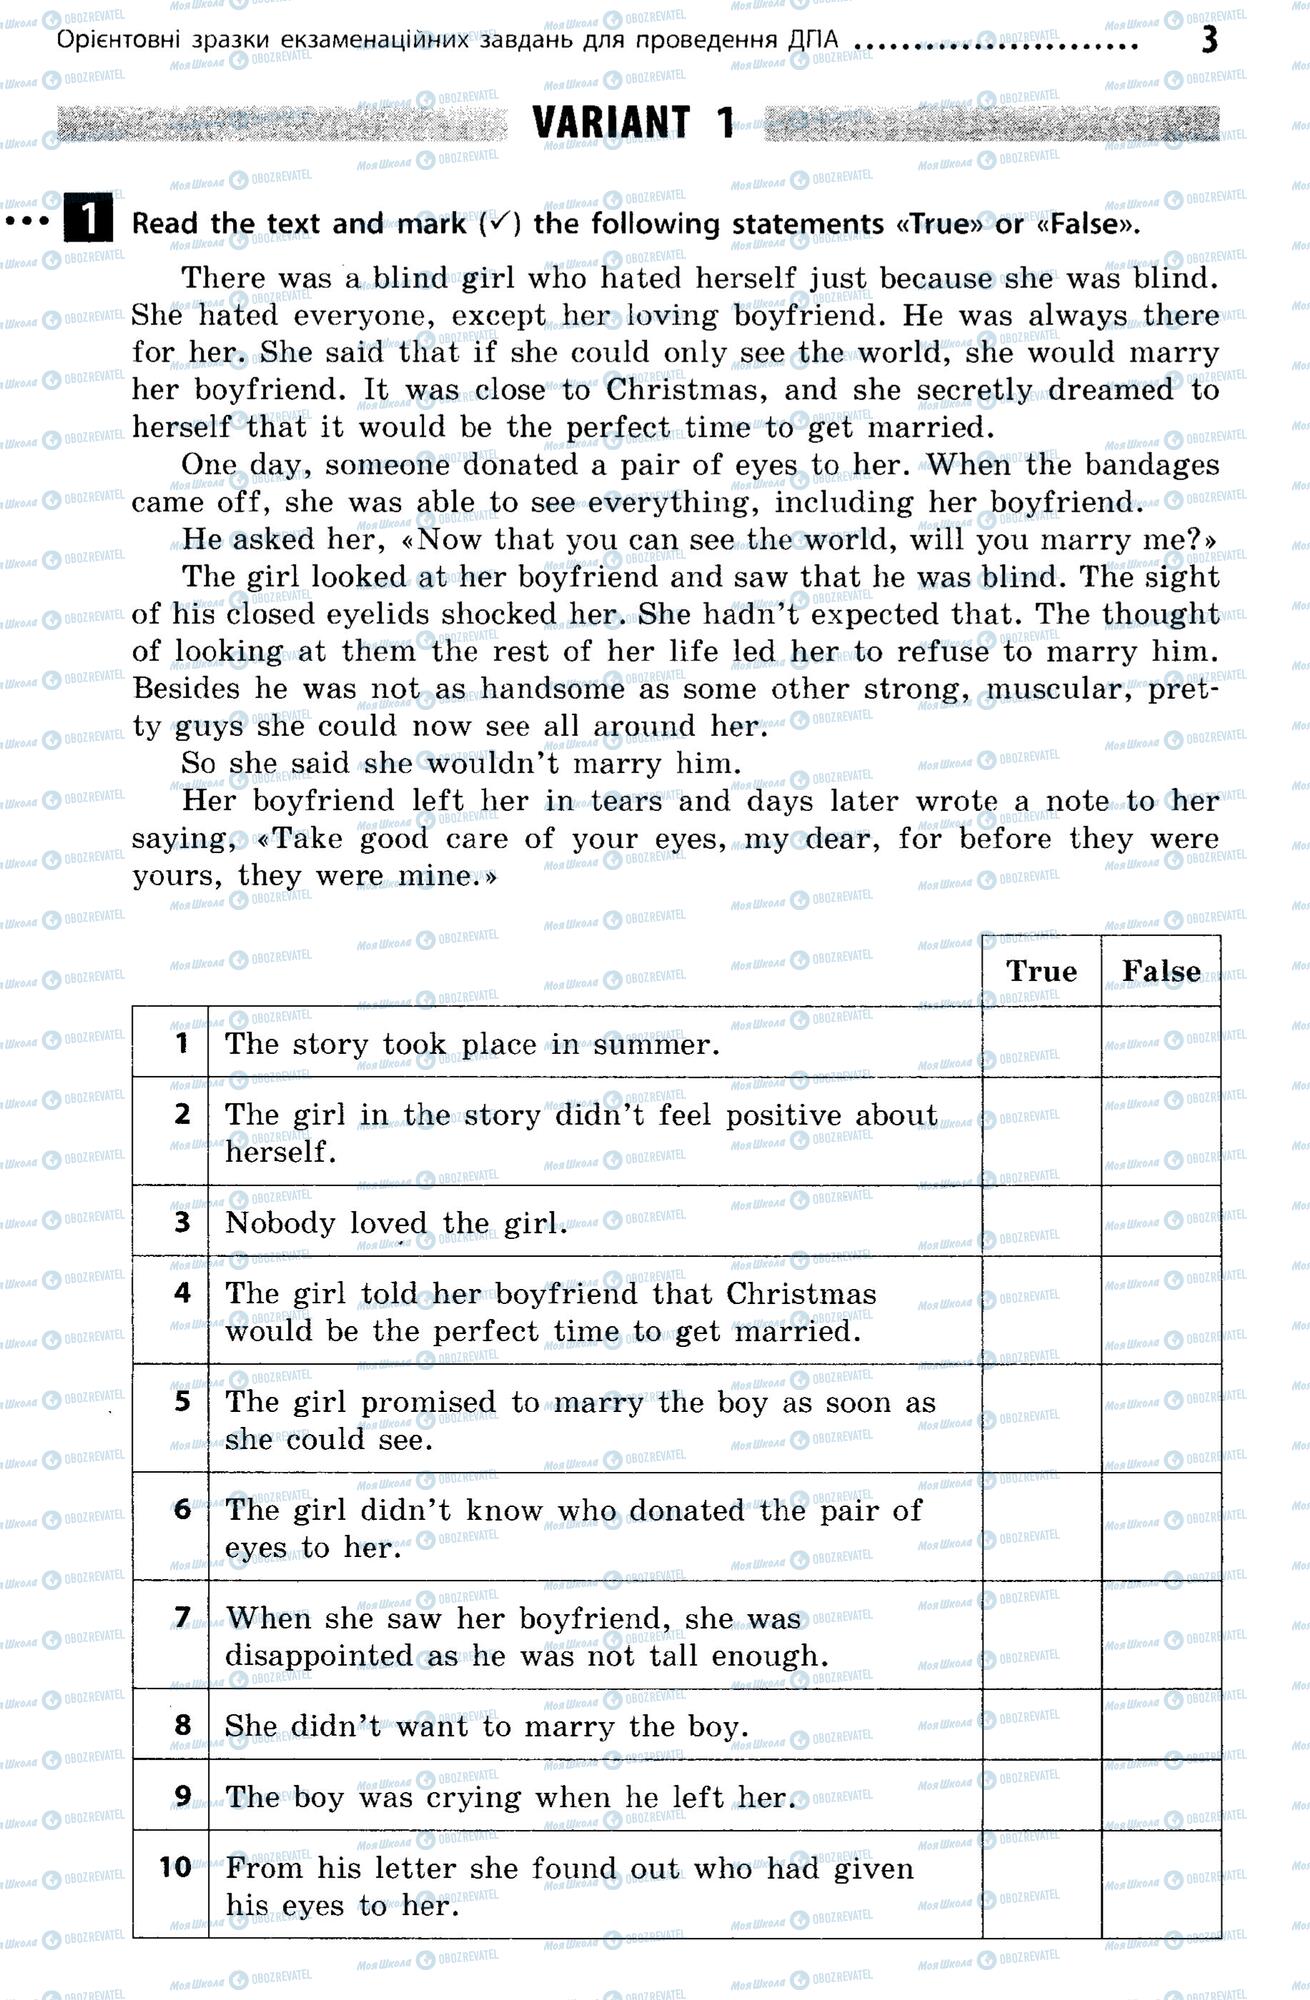 ДПА Английский язык 9 класс страница  3